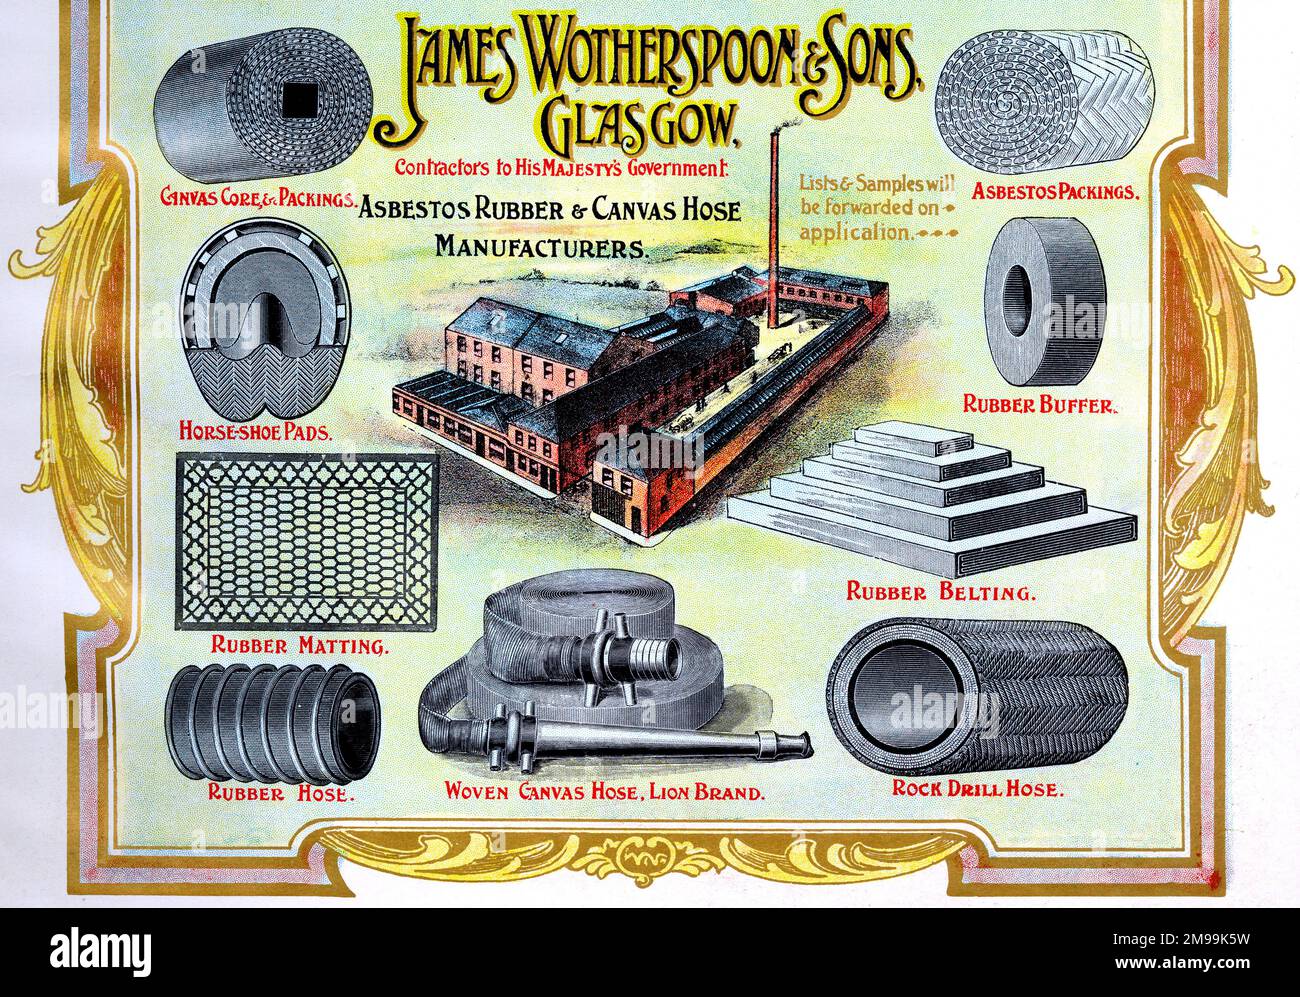 Annuncio per James Wotherspoon & Sons, Produttori di amianto, gomma e canvas, Glasgow, Scozia. Foto Stock